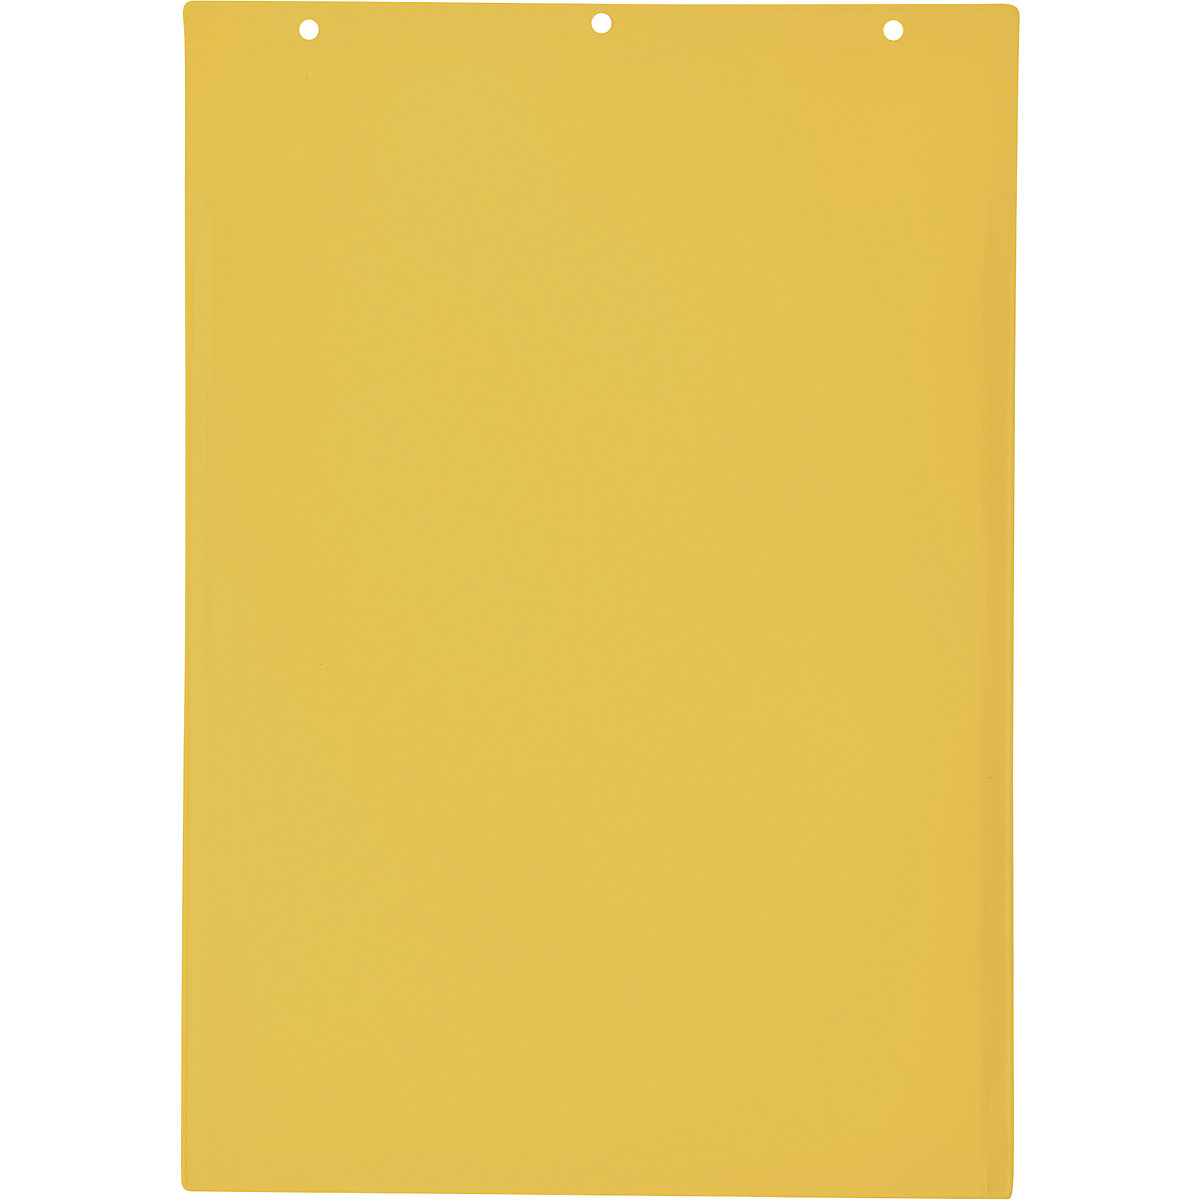 Porte-documents avec trous d'accrochage, format vertical A4, avec cache de protection, jaune, lot de 50